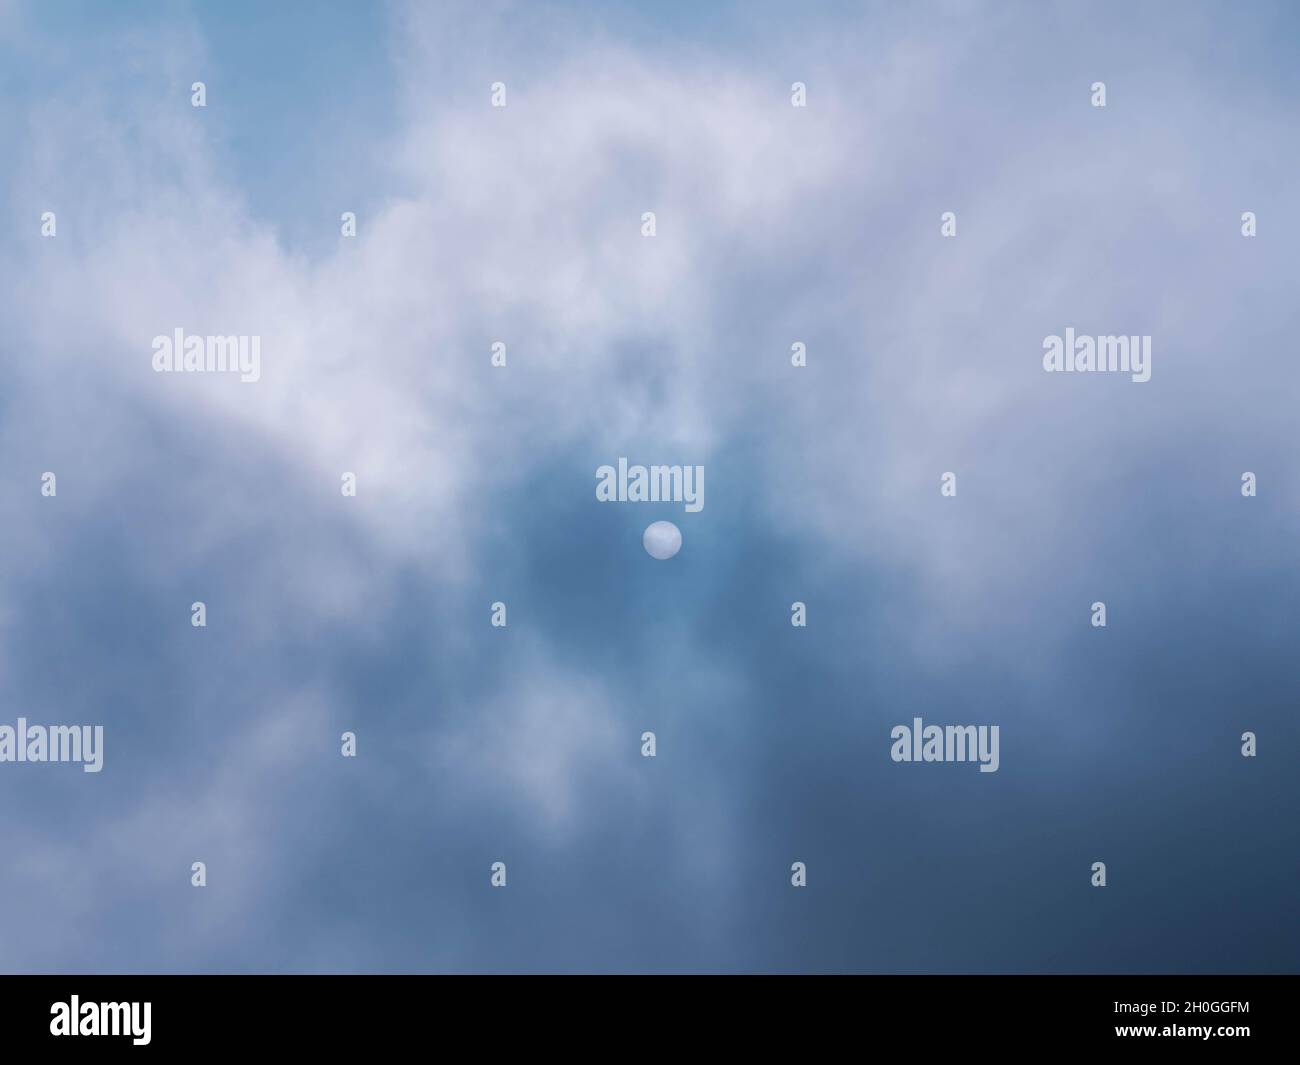 Nebbia altamente crescente che sopprime la luce del sole. Sulla superficie del sole, due punti possono essere visti al fondo. Foto Stock